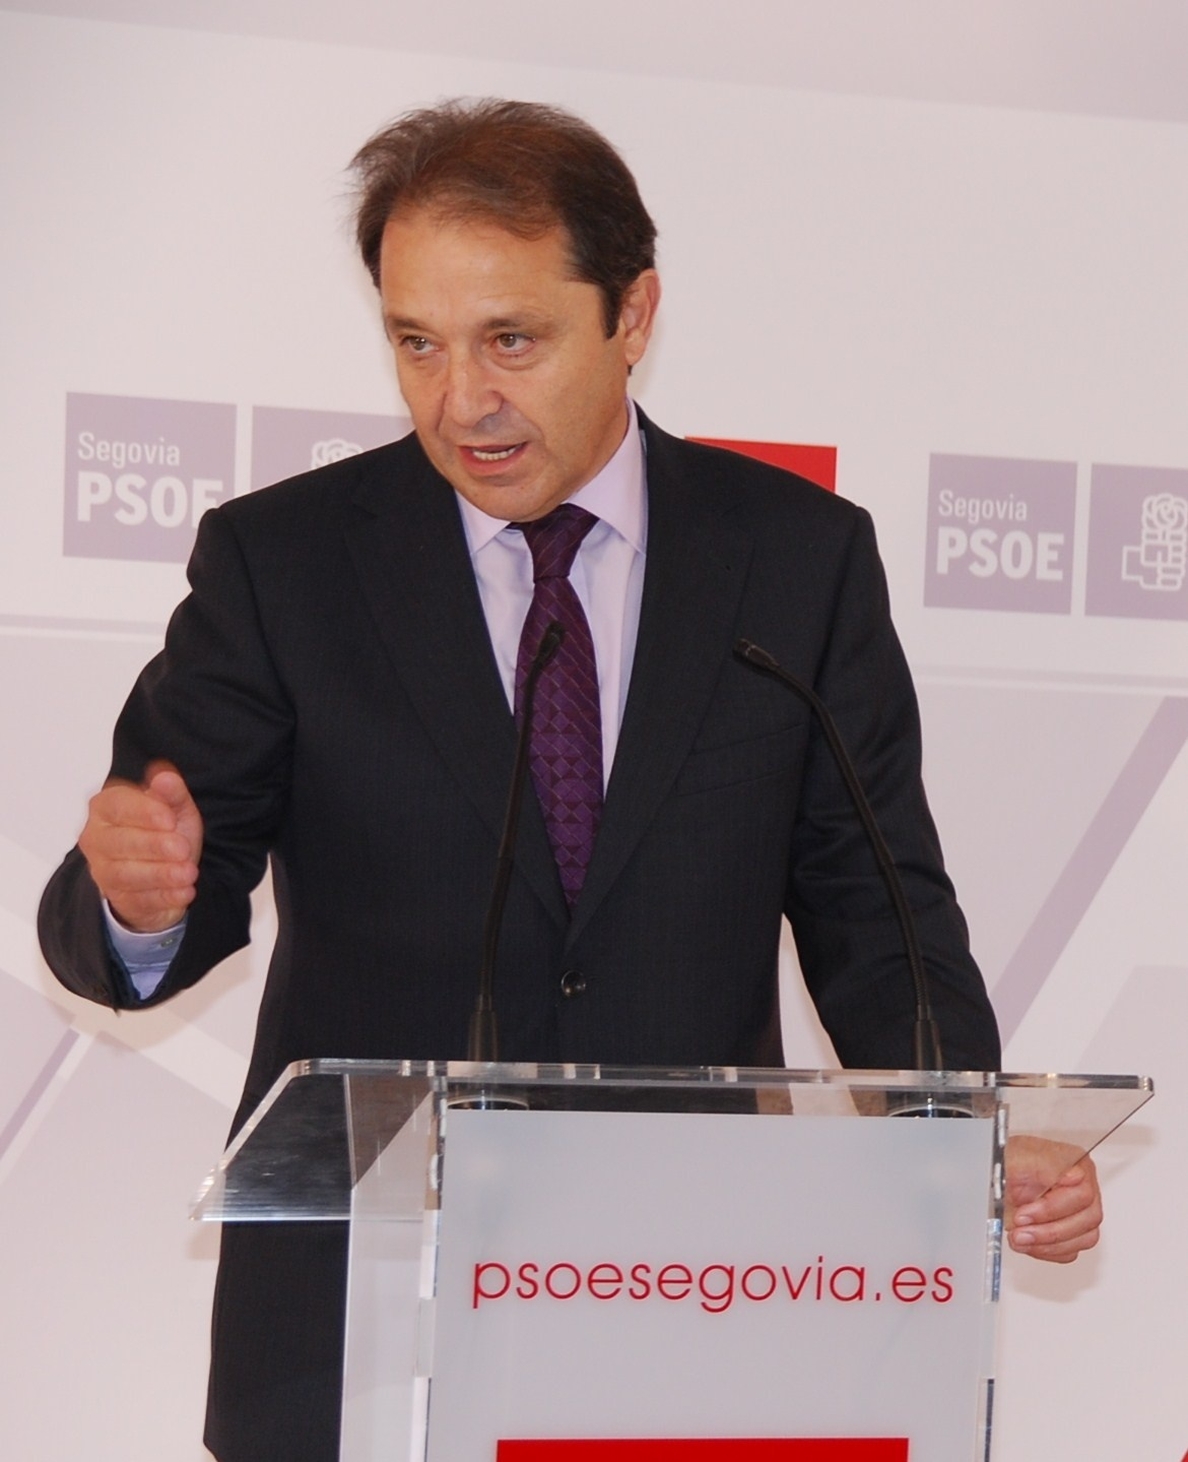 PSOE urge al Gobierno a elaborar un plan de rescate que garantice el futuro de RTVE